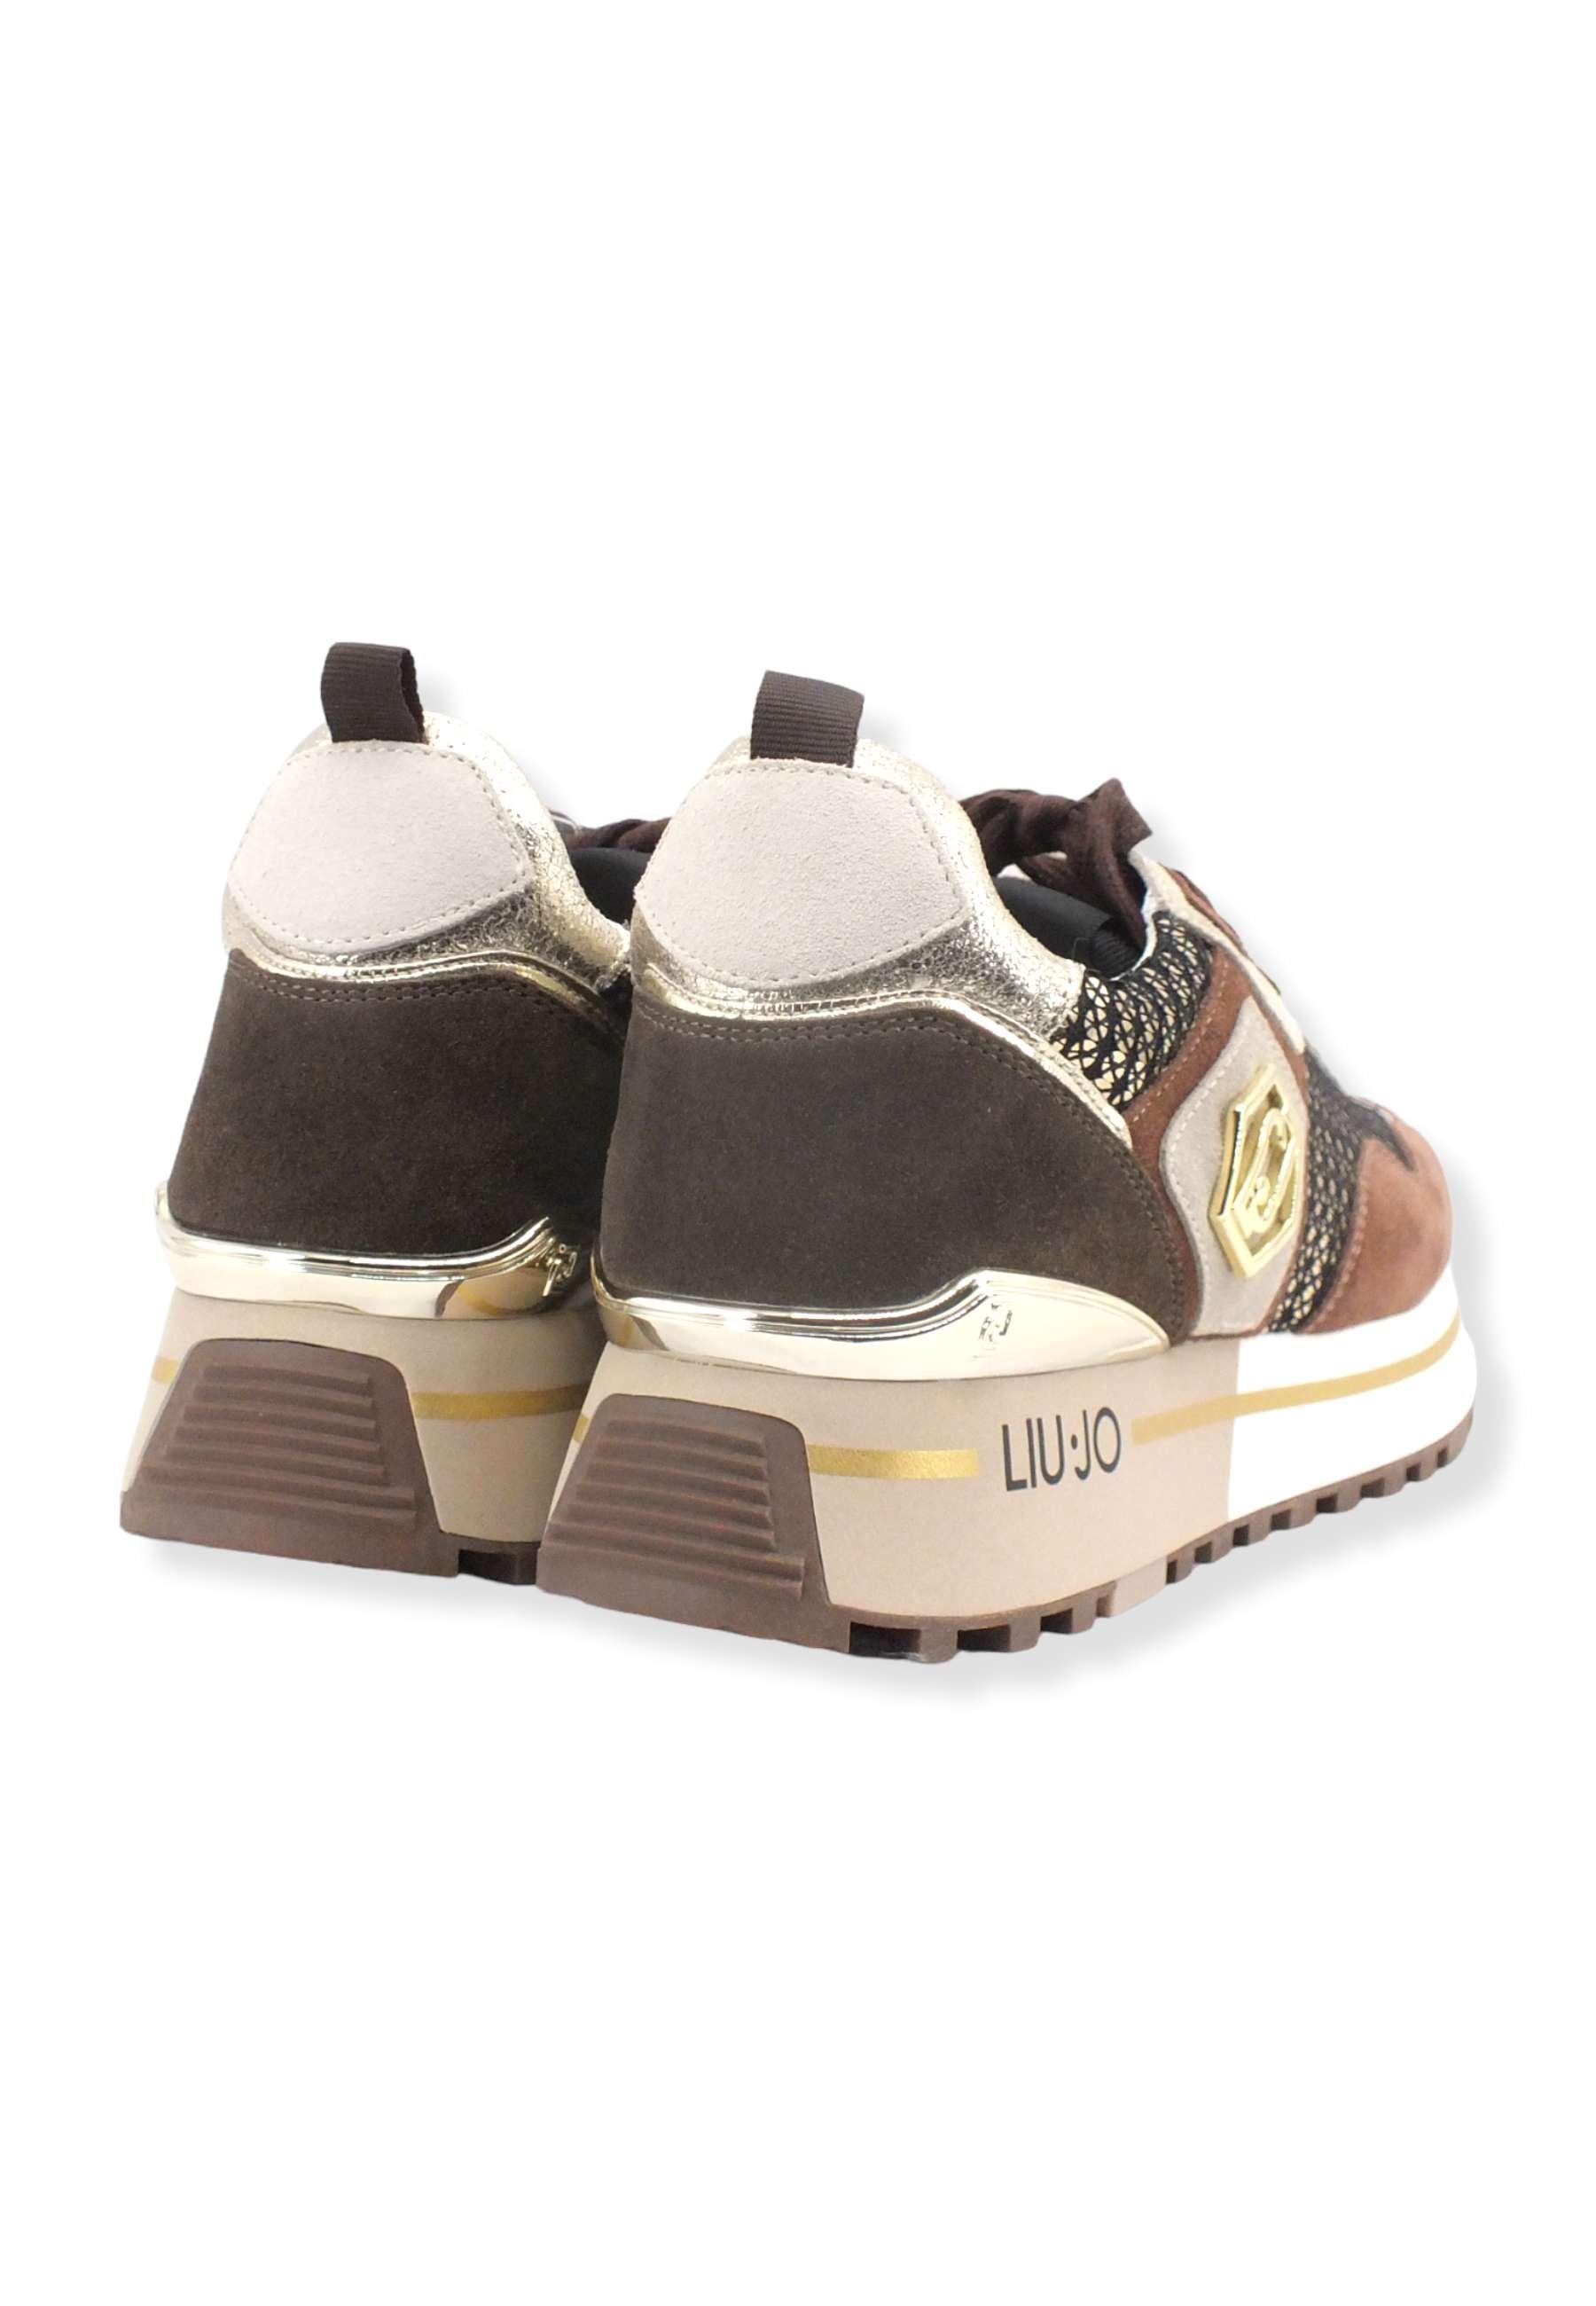 LIU JO Maxi Wonder 01 Paillettes Sneaker Donna Brown BF2095PX242 - Sandrini Calzature e Abbigliamento